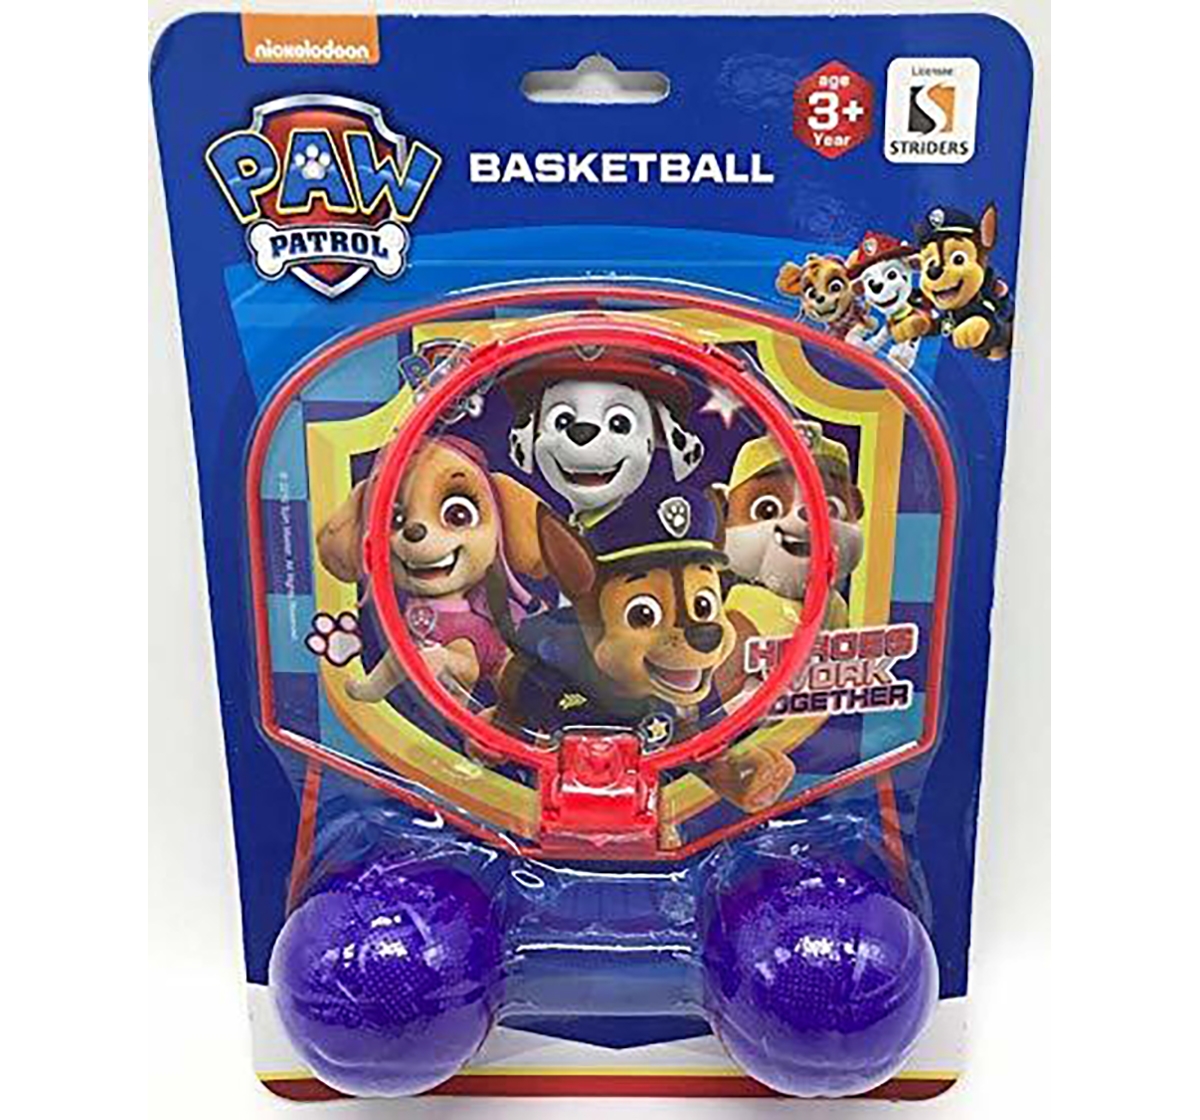 Paw Patrol | Paw Patrol Basket Ball Board for Kids age 3Y+ 